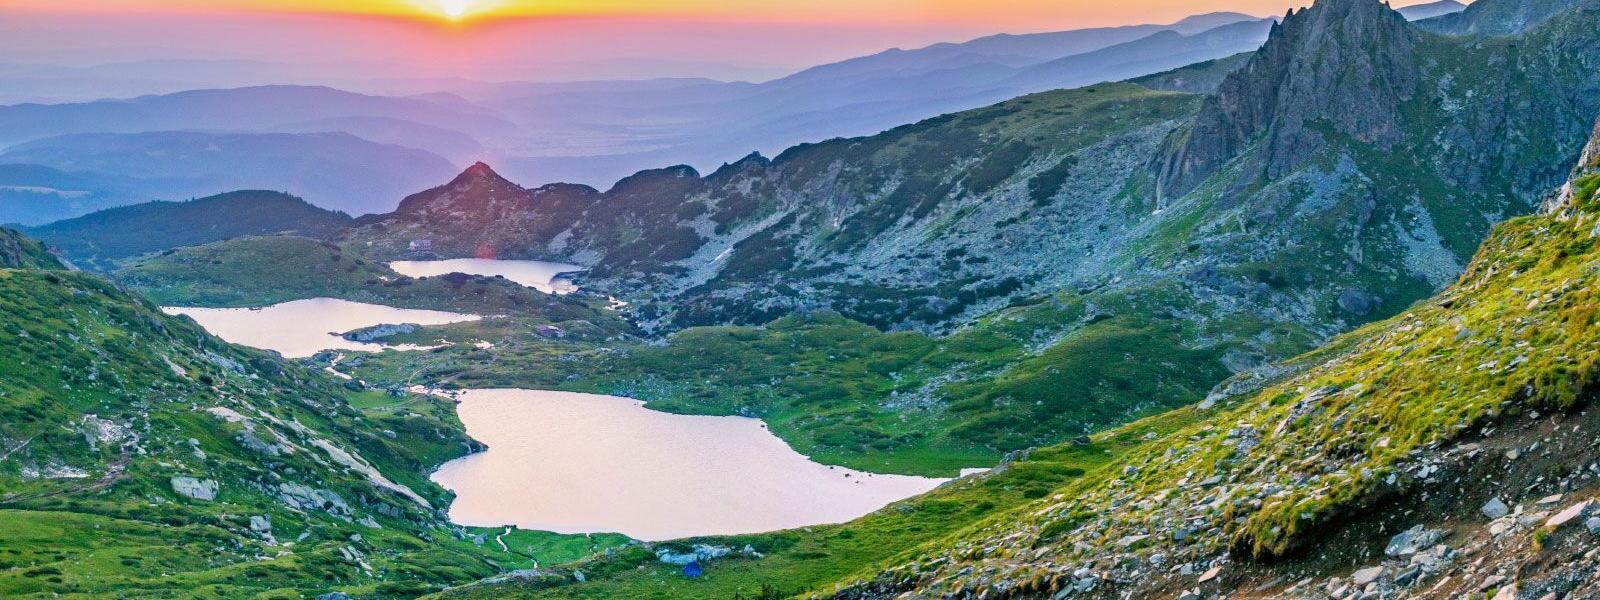 Urlaub mit Ferienwohnung oder Ferienhaus an der bulgarischen Schwarzmeerküste - e-domizil